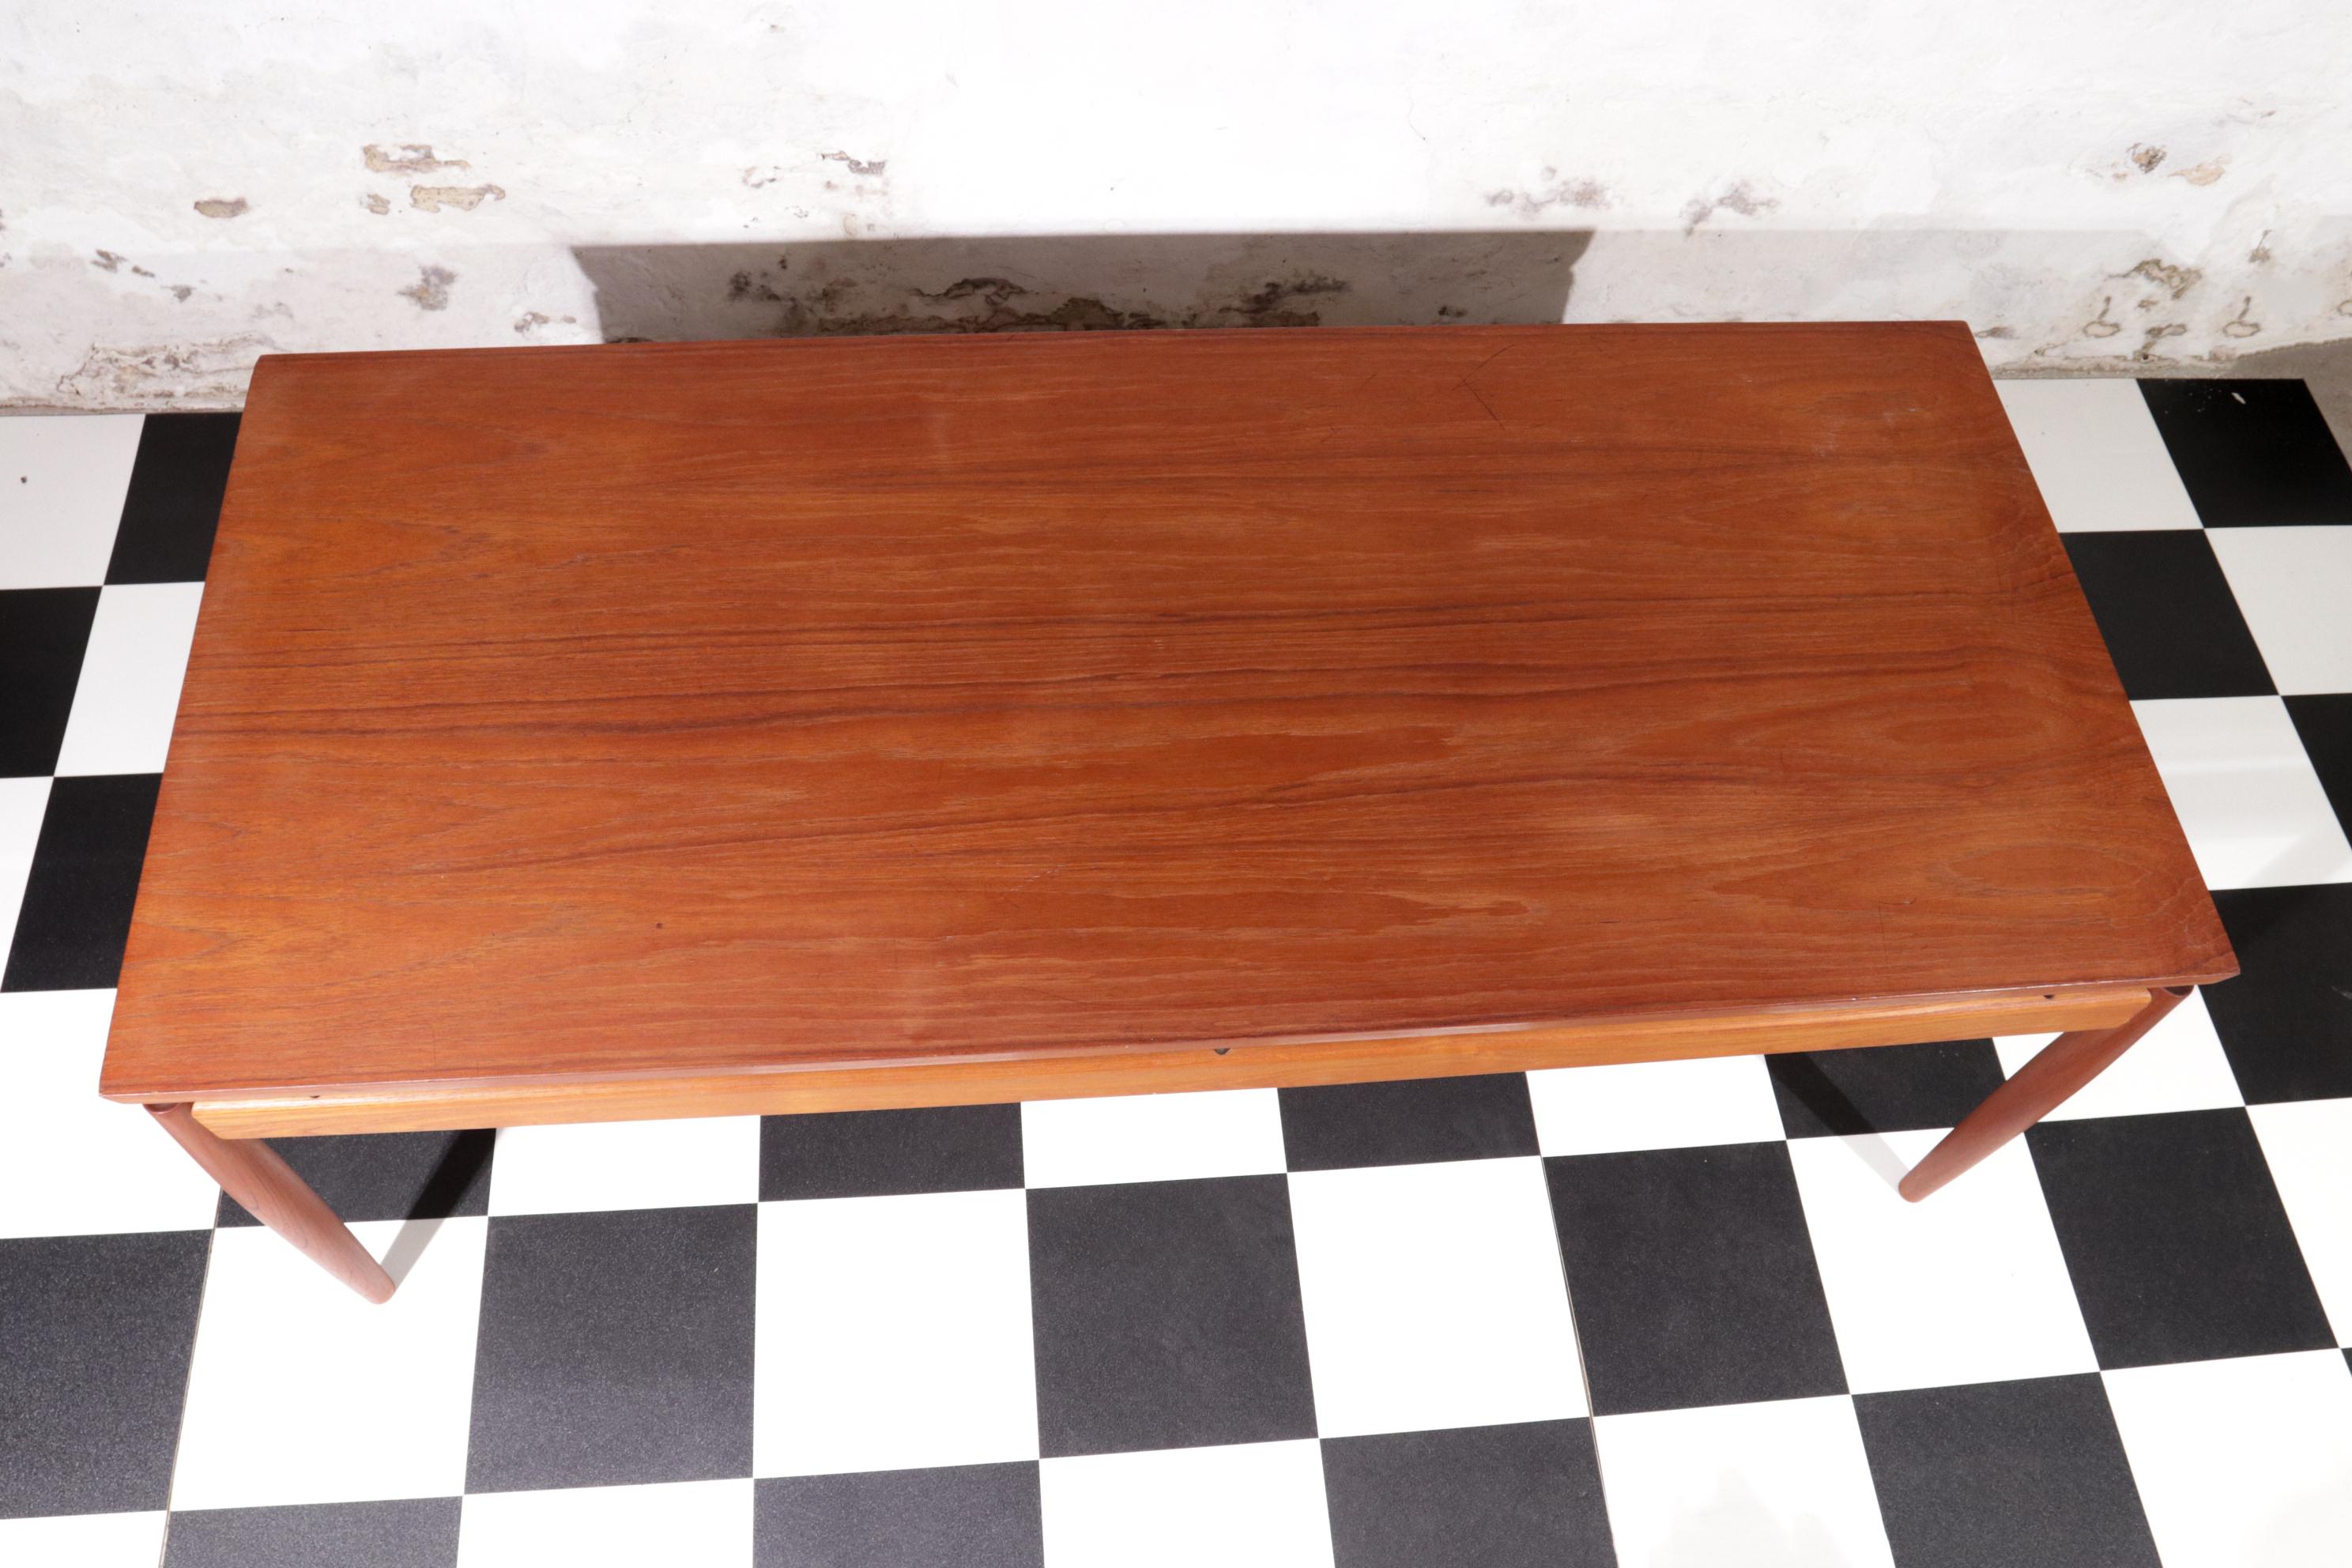 Danish Design Grete Jalk Sofa Table, Model 622 / 54 Teak France & Son, 1960s For Sale 1